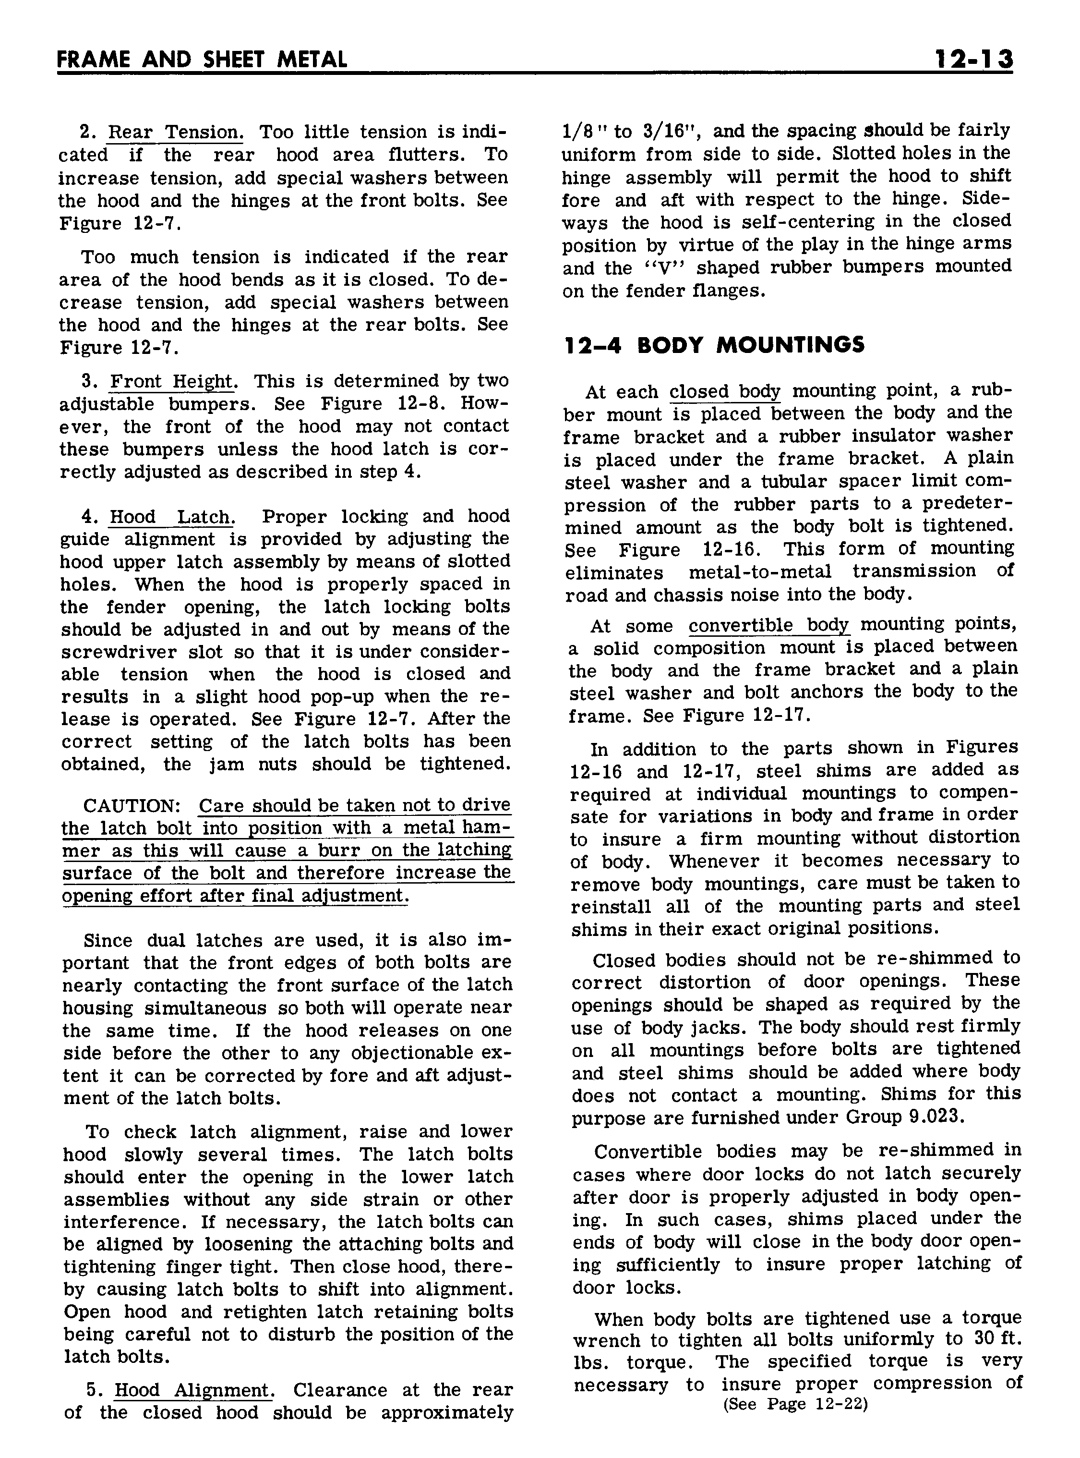 n_12 1961 Buick Shop Manual - Frame & Sheet Metal-013-013.jpg